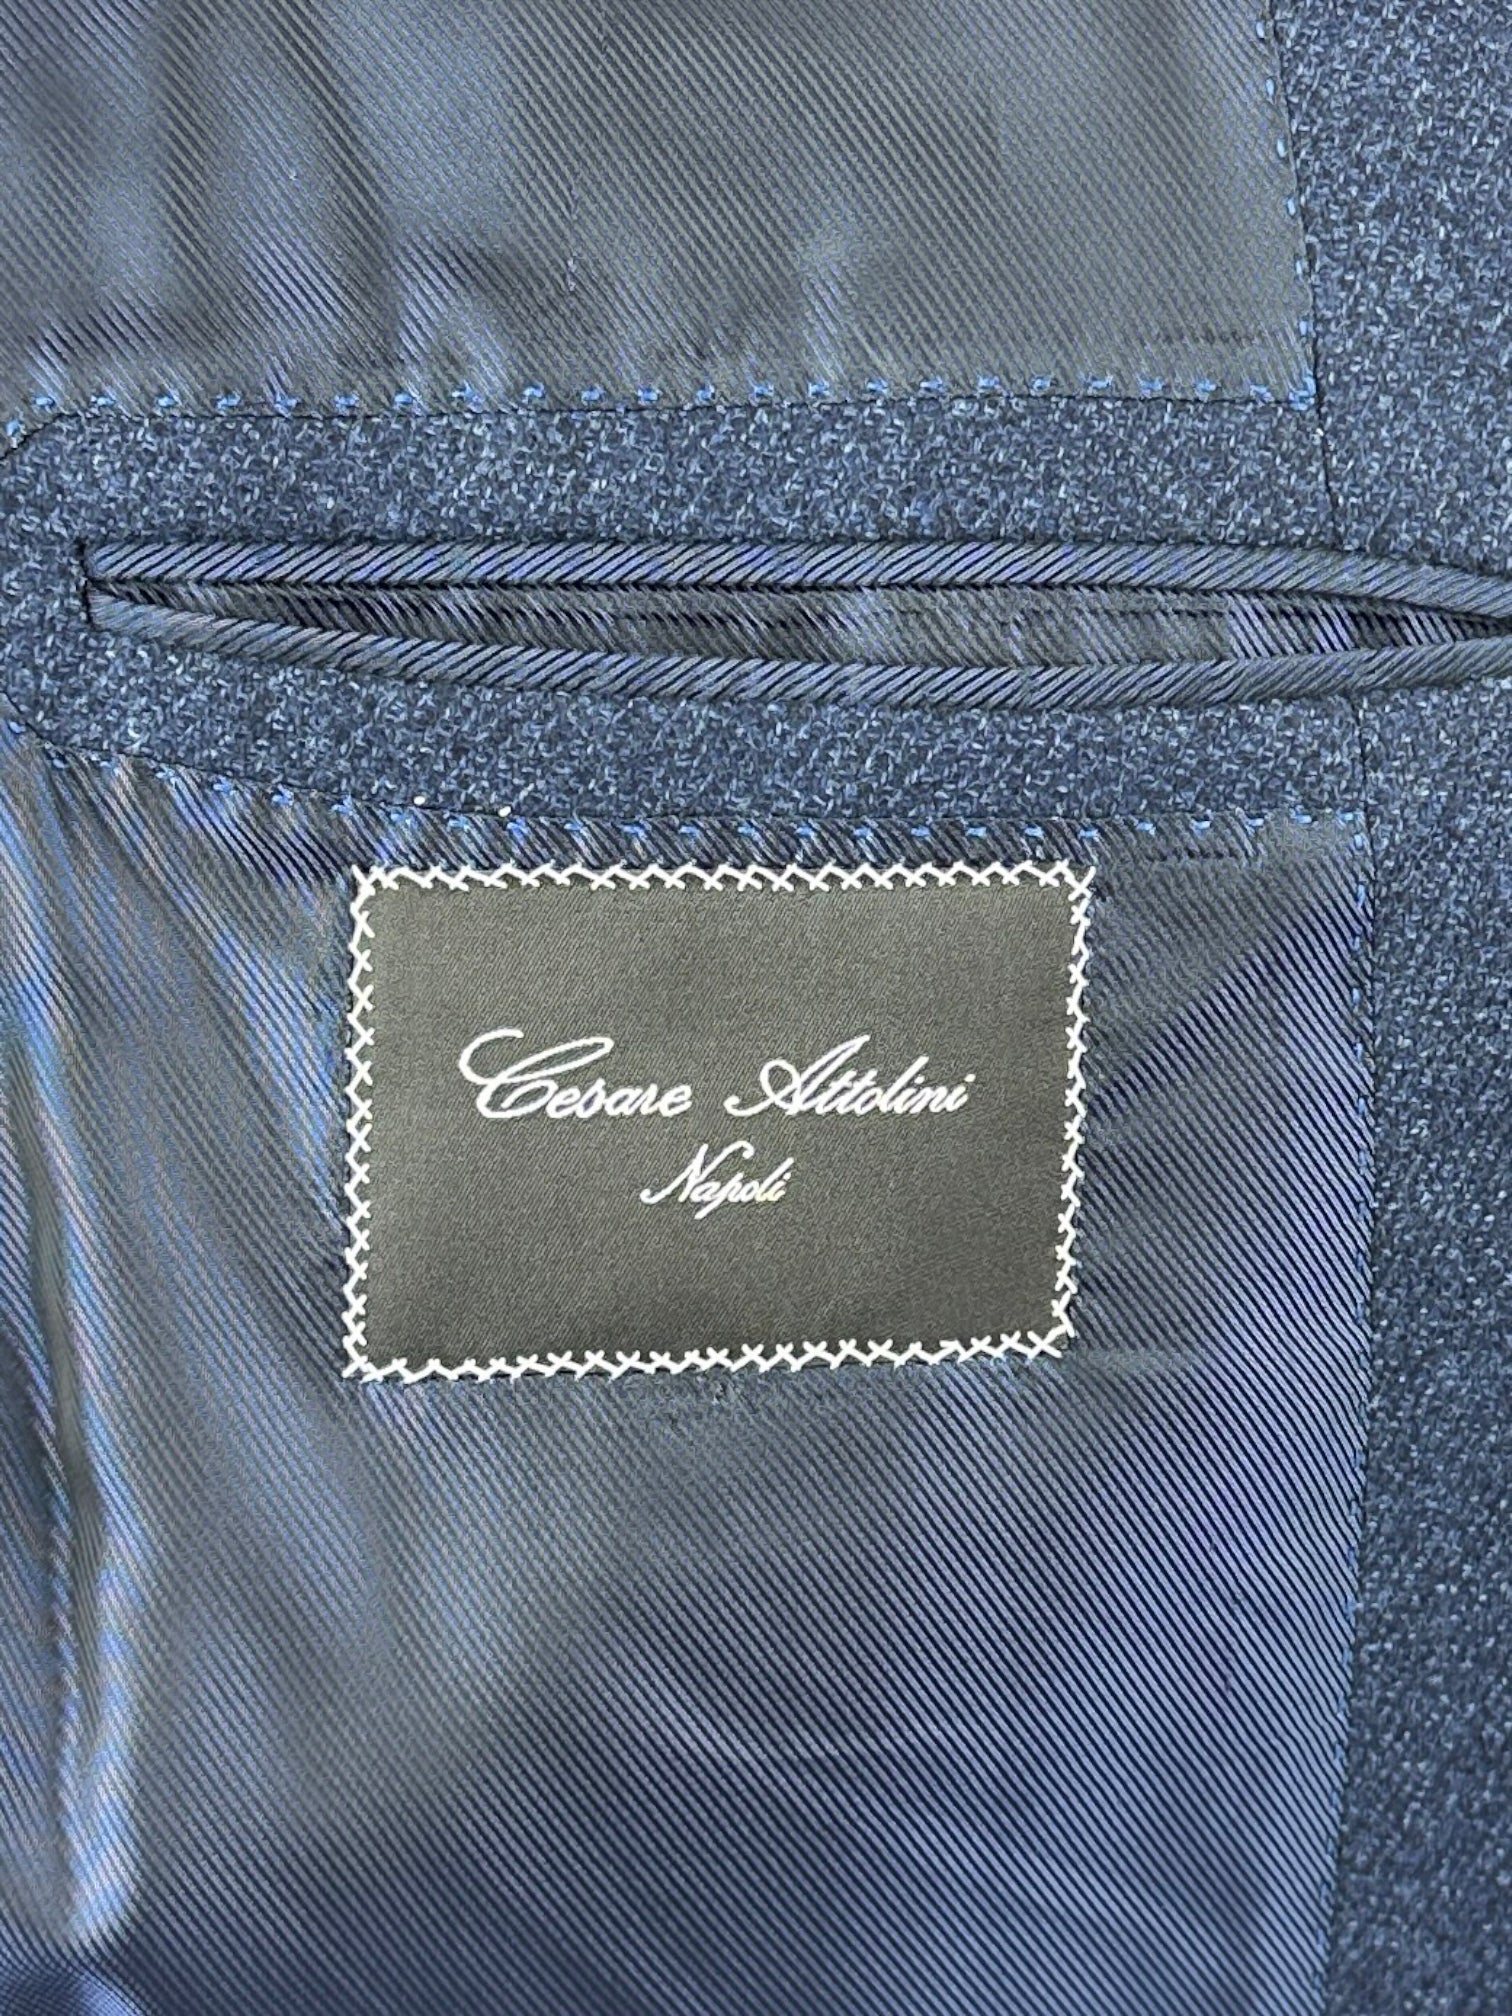 Cesare Attolini Blue Twill Wool & Silk Jacket